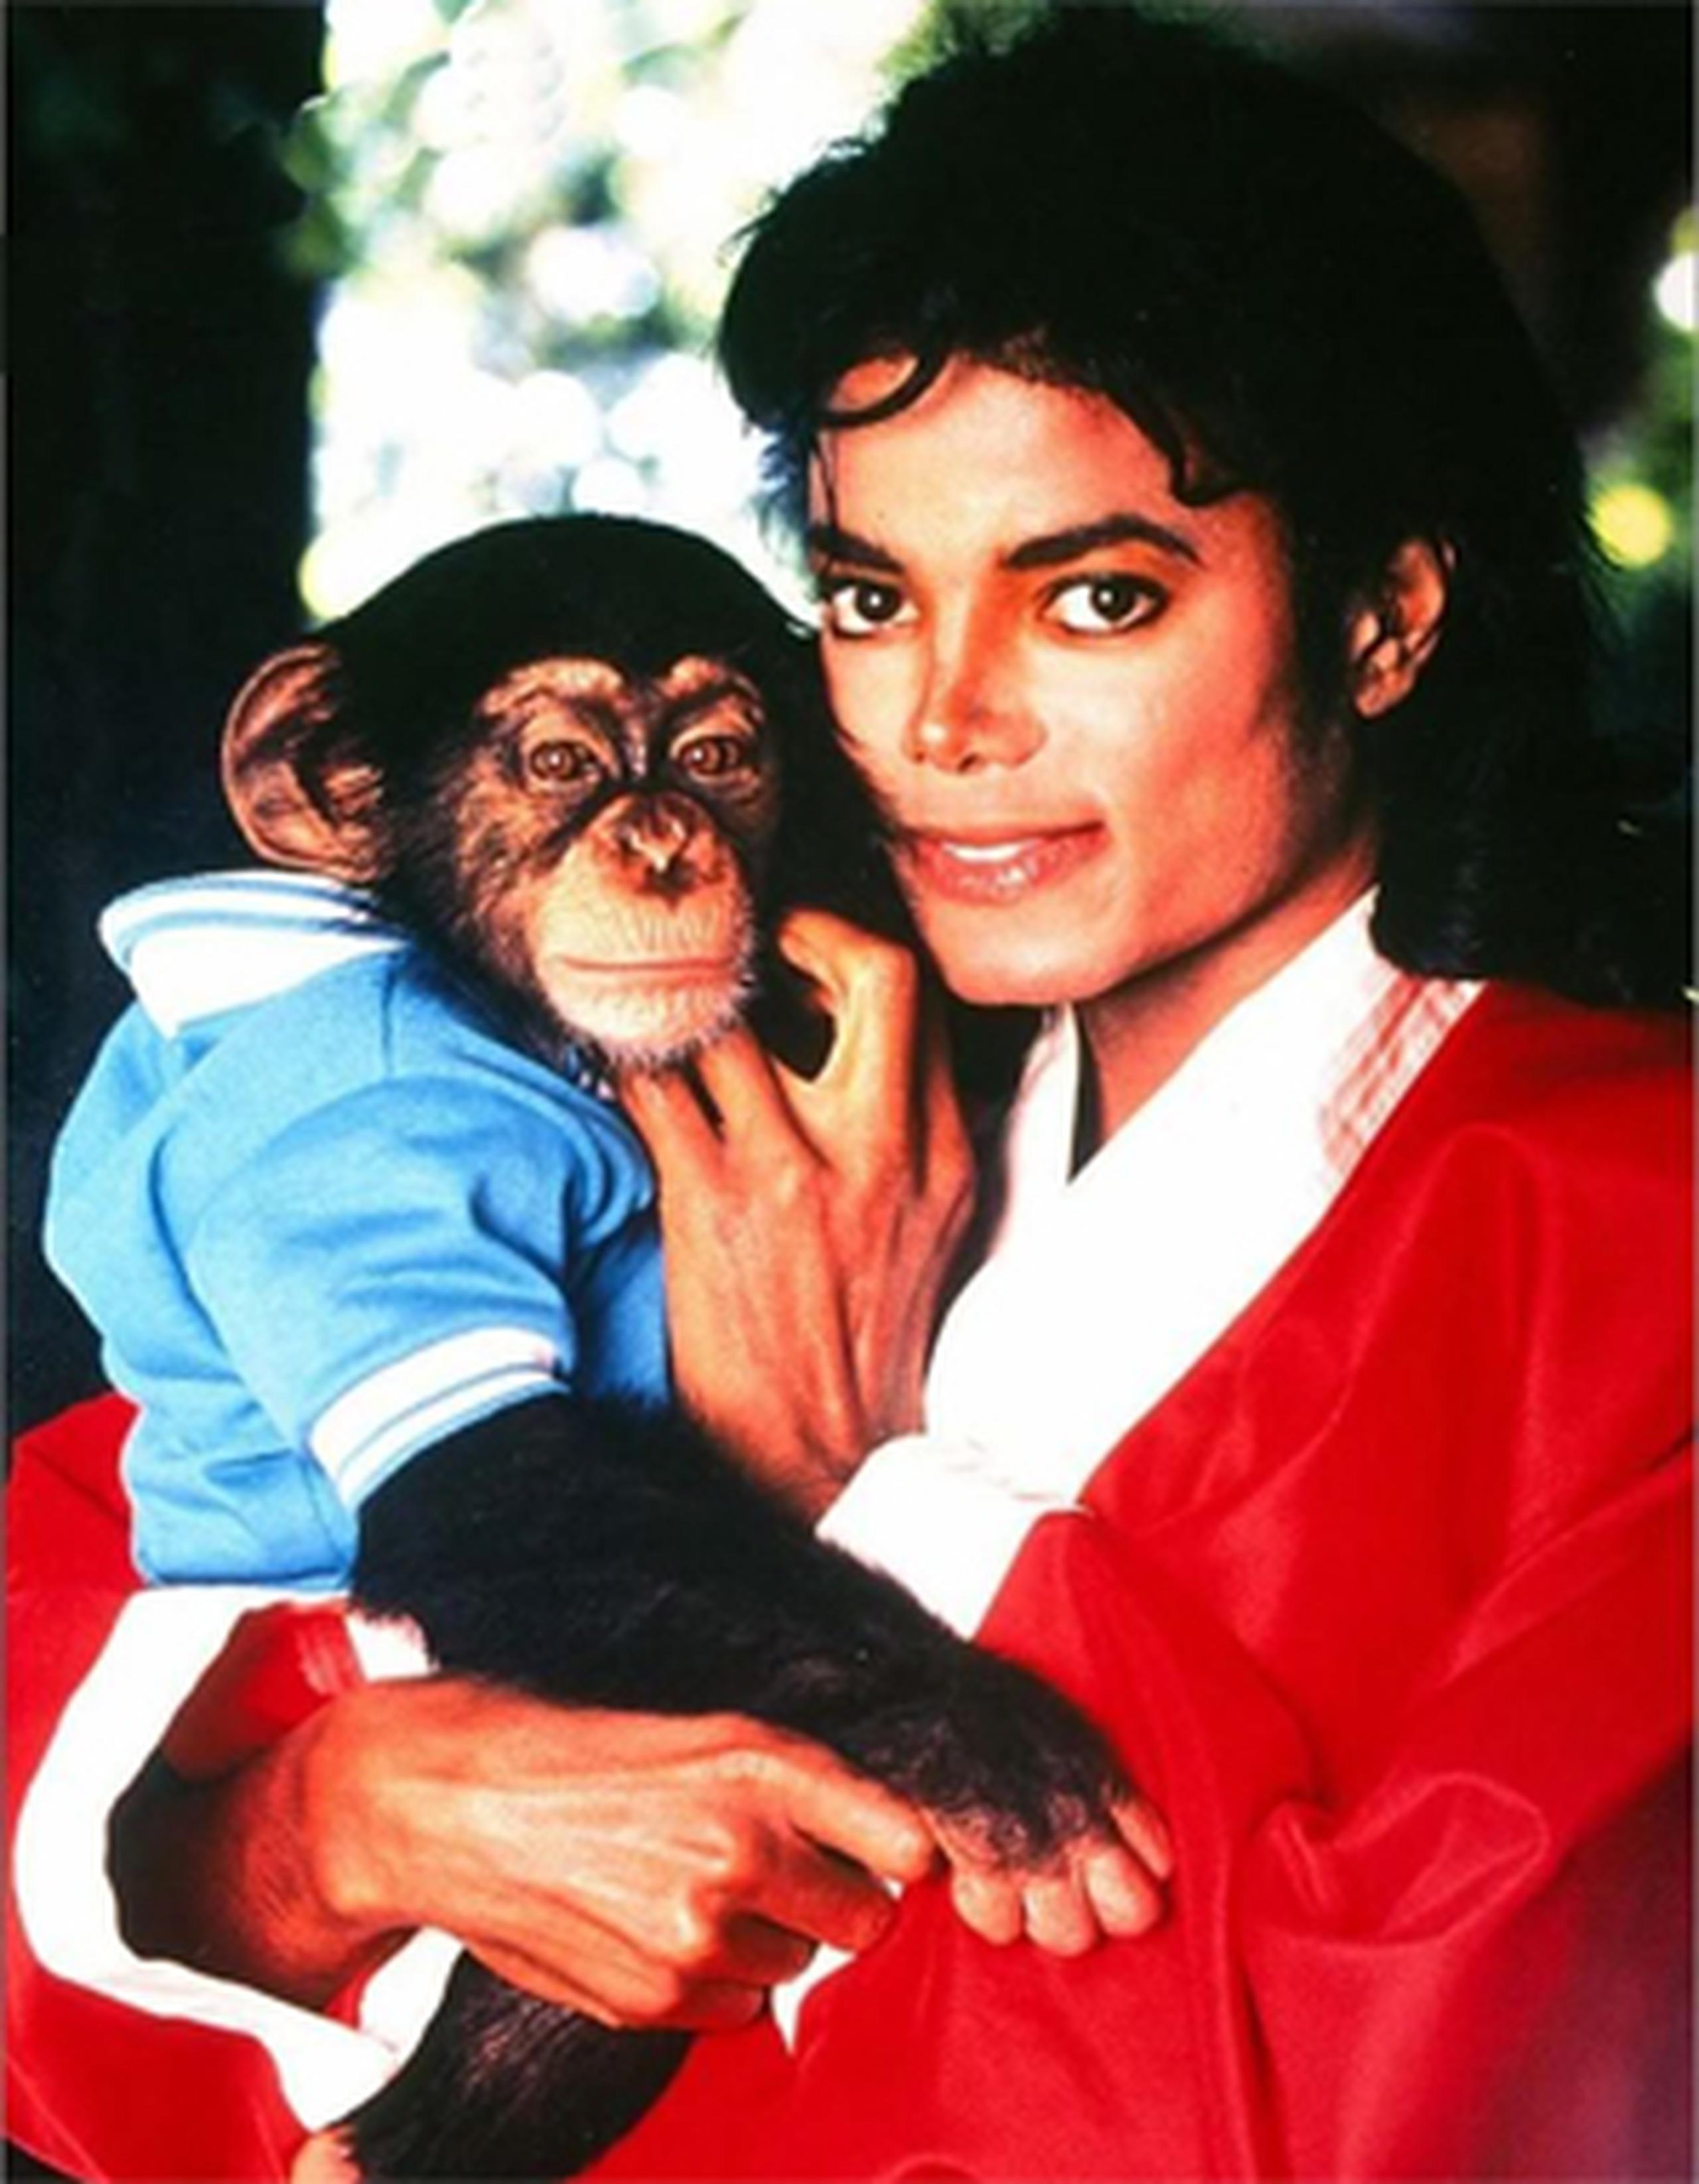 Actualmente, el mono vive en un santuario ubicado en Wauchula, Florida.